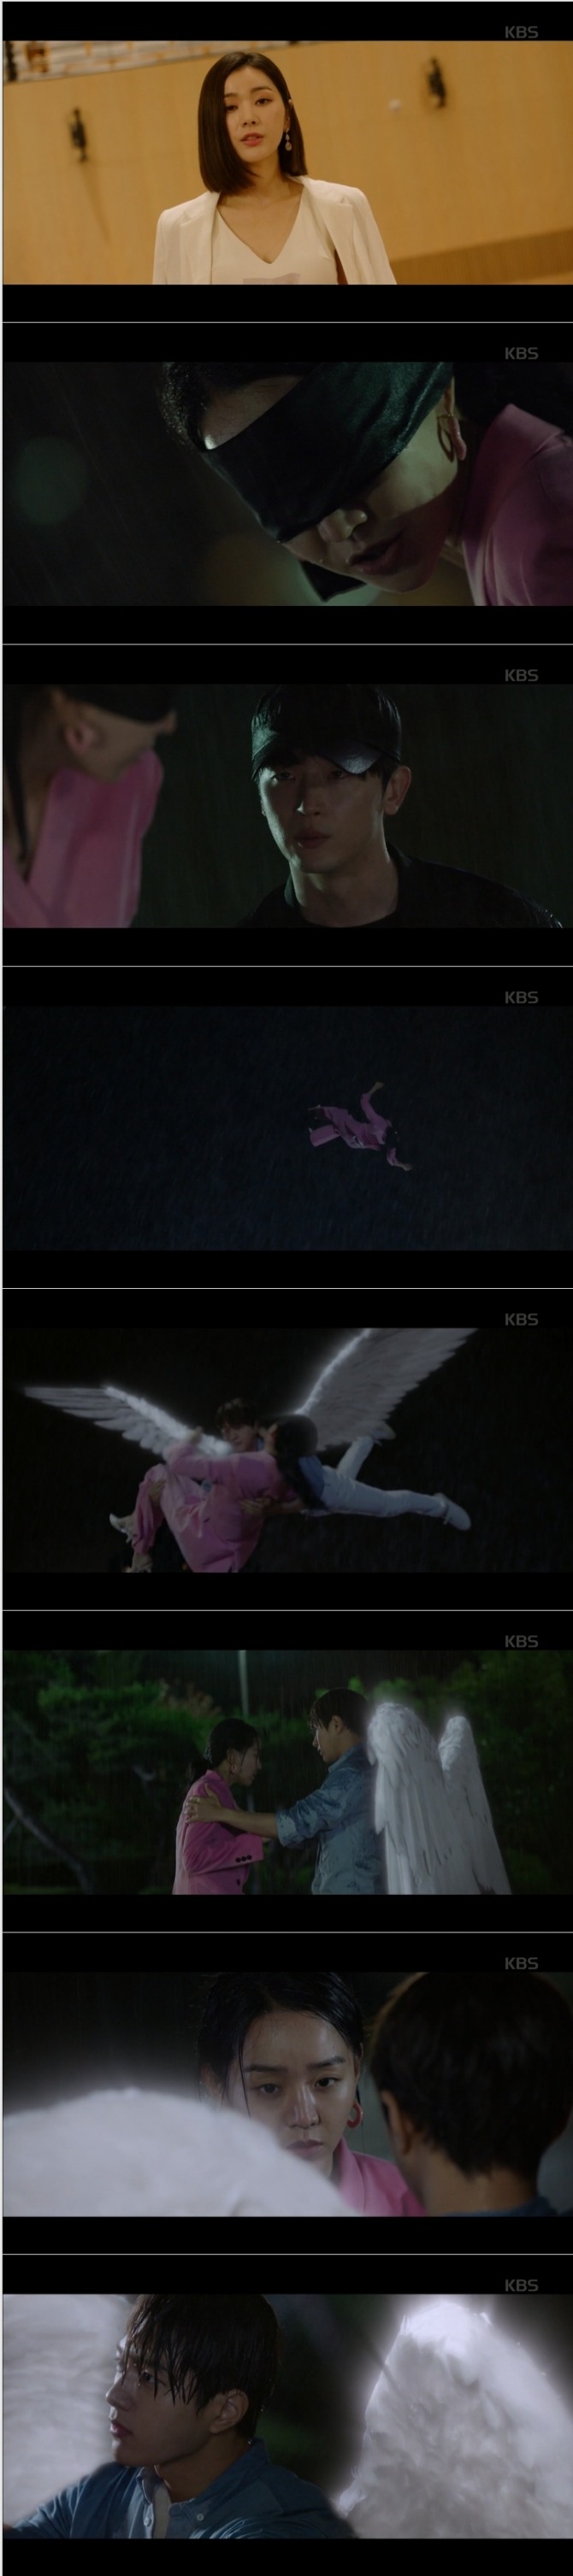 20일 방송된 KBS2TV 수목드라마 '단 하나의 사랑' 19~20회에서는 김단(김명수 분)이 천사 날개를 활짝 펴서 금루나(길은혜 분)의 사주를 받아 추락사고를 당한 이연서(신혜선 분)를 구출하는 충격 엔딩이 그려졌다. 사진=KBS2TV '단 하나의 사랑' 19~20회 방송 캡처